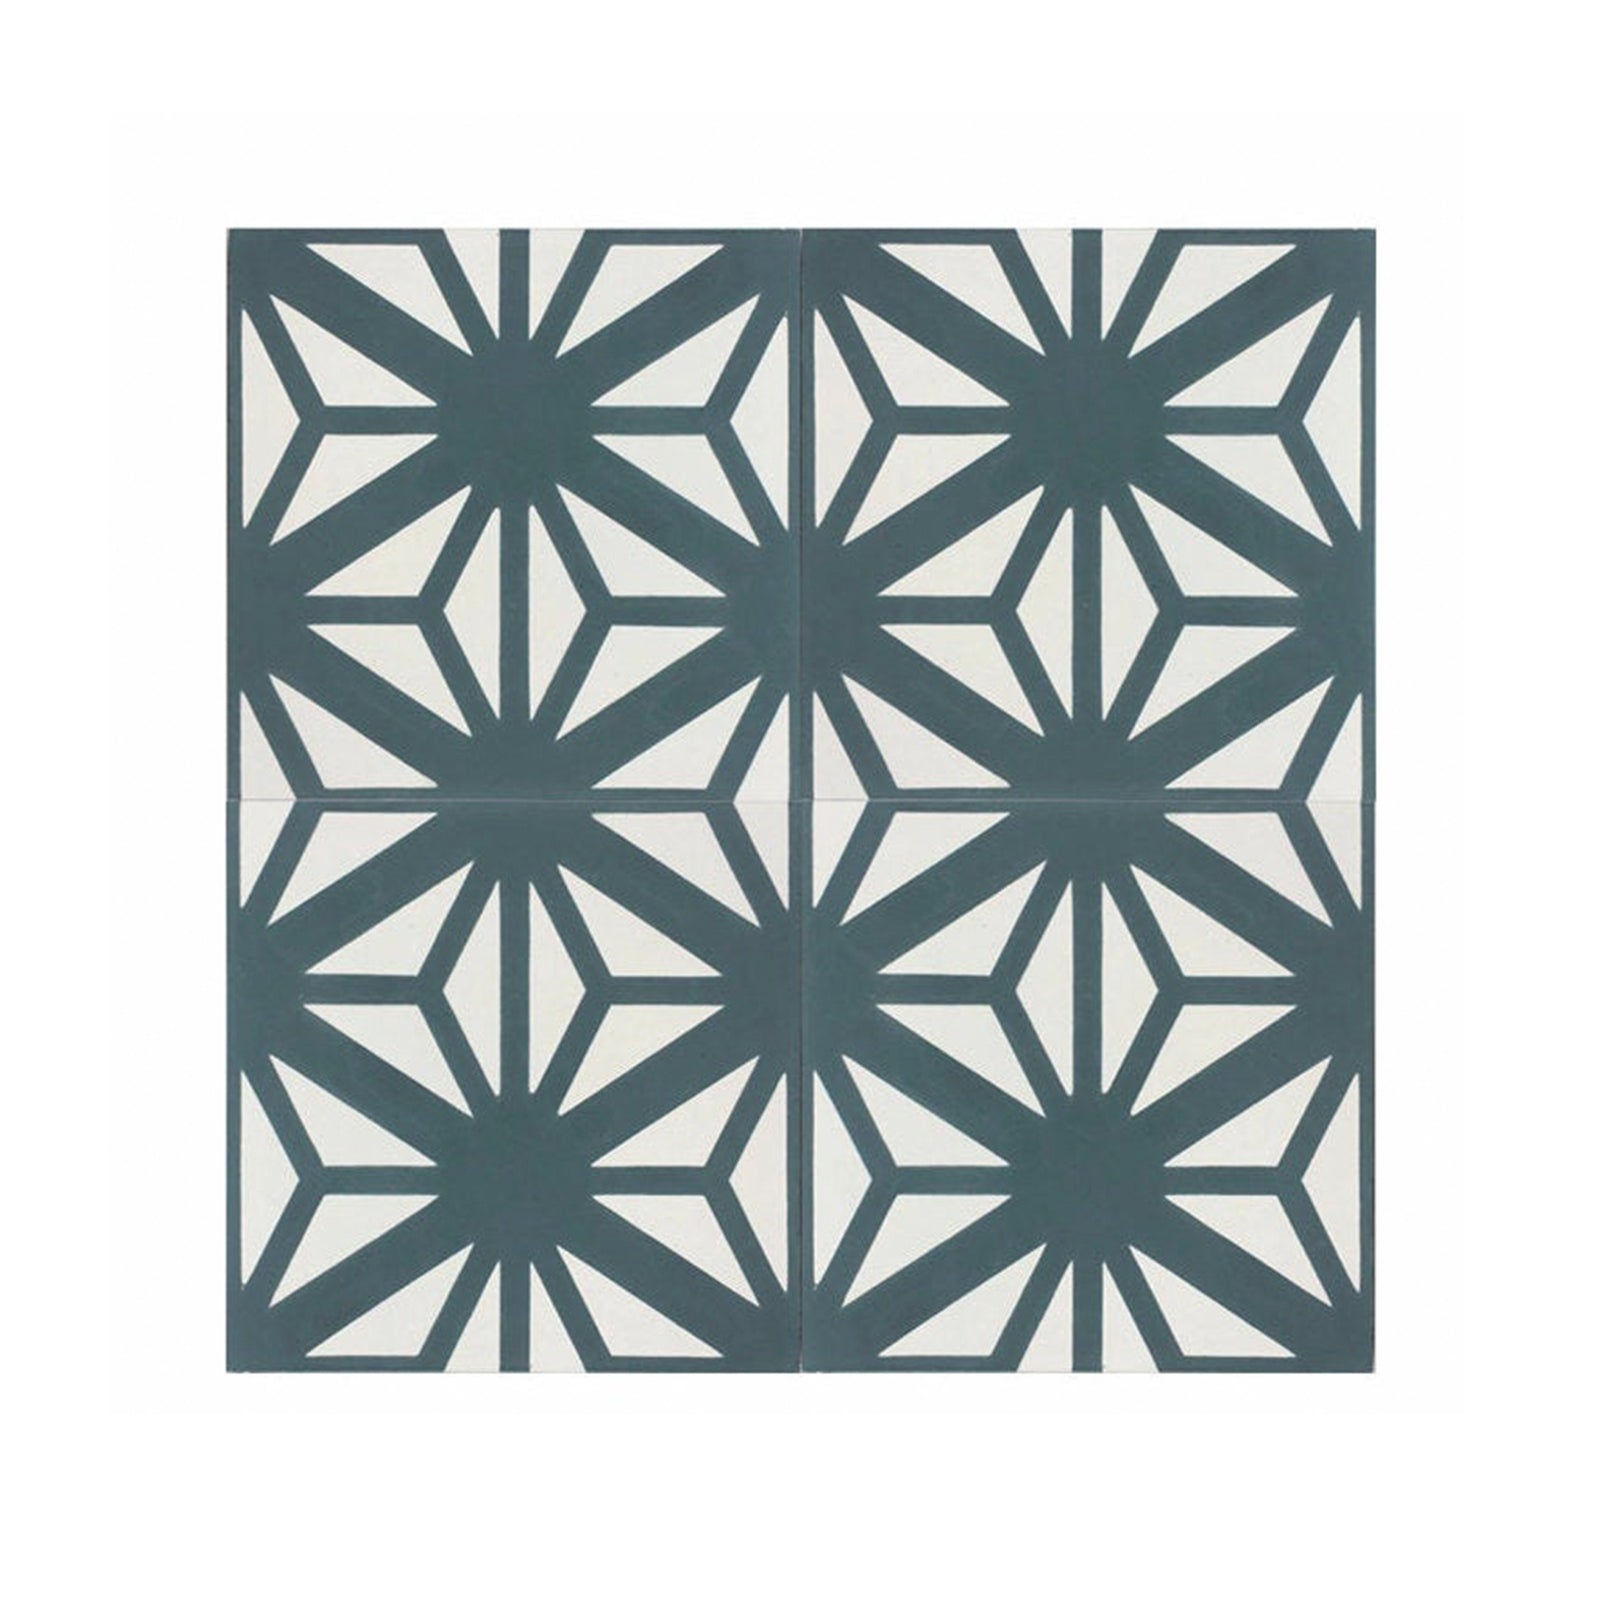 Estrella Teal Green Cement Tile